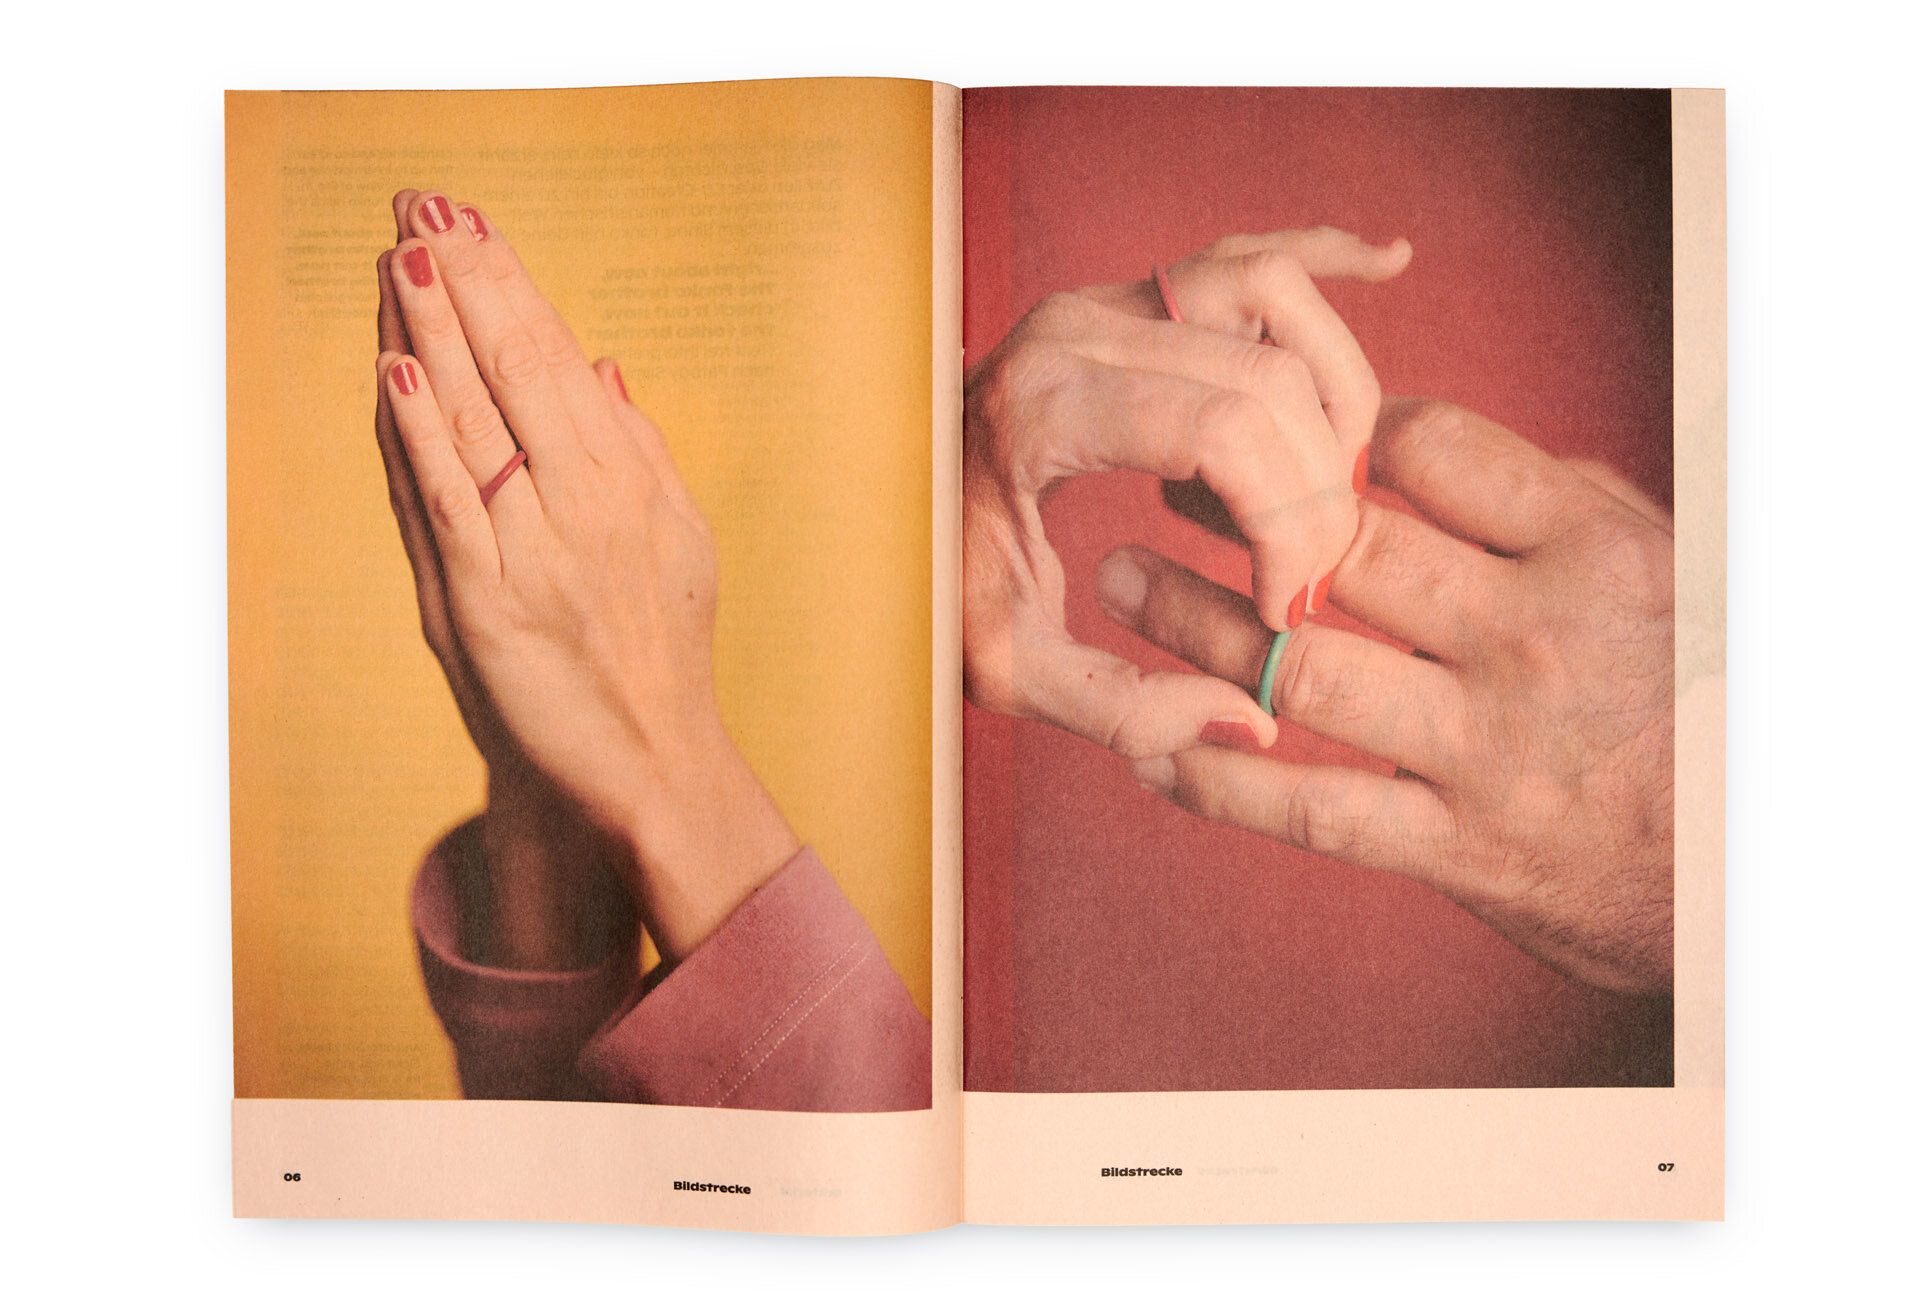  Reproduktion: Doppelseite aus »Bulletin No. 2« von weserholz – Zu sehen ist ein Bild mit einem Paar betender Hände, am Ringfinger steckt ein roter Ringe, sowie ein Bild von einer Männer- und einer Frauenhand, die Frauenhand schiebt gerade einen türk